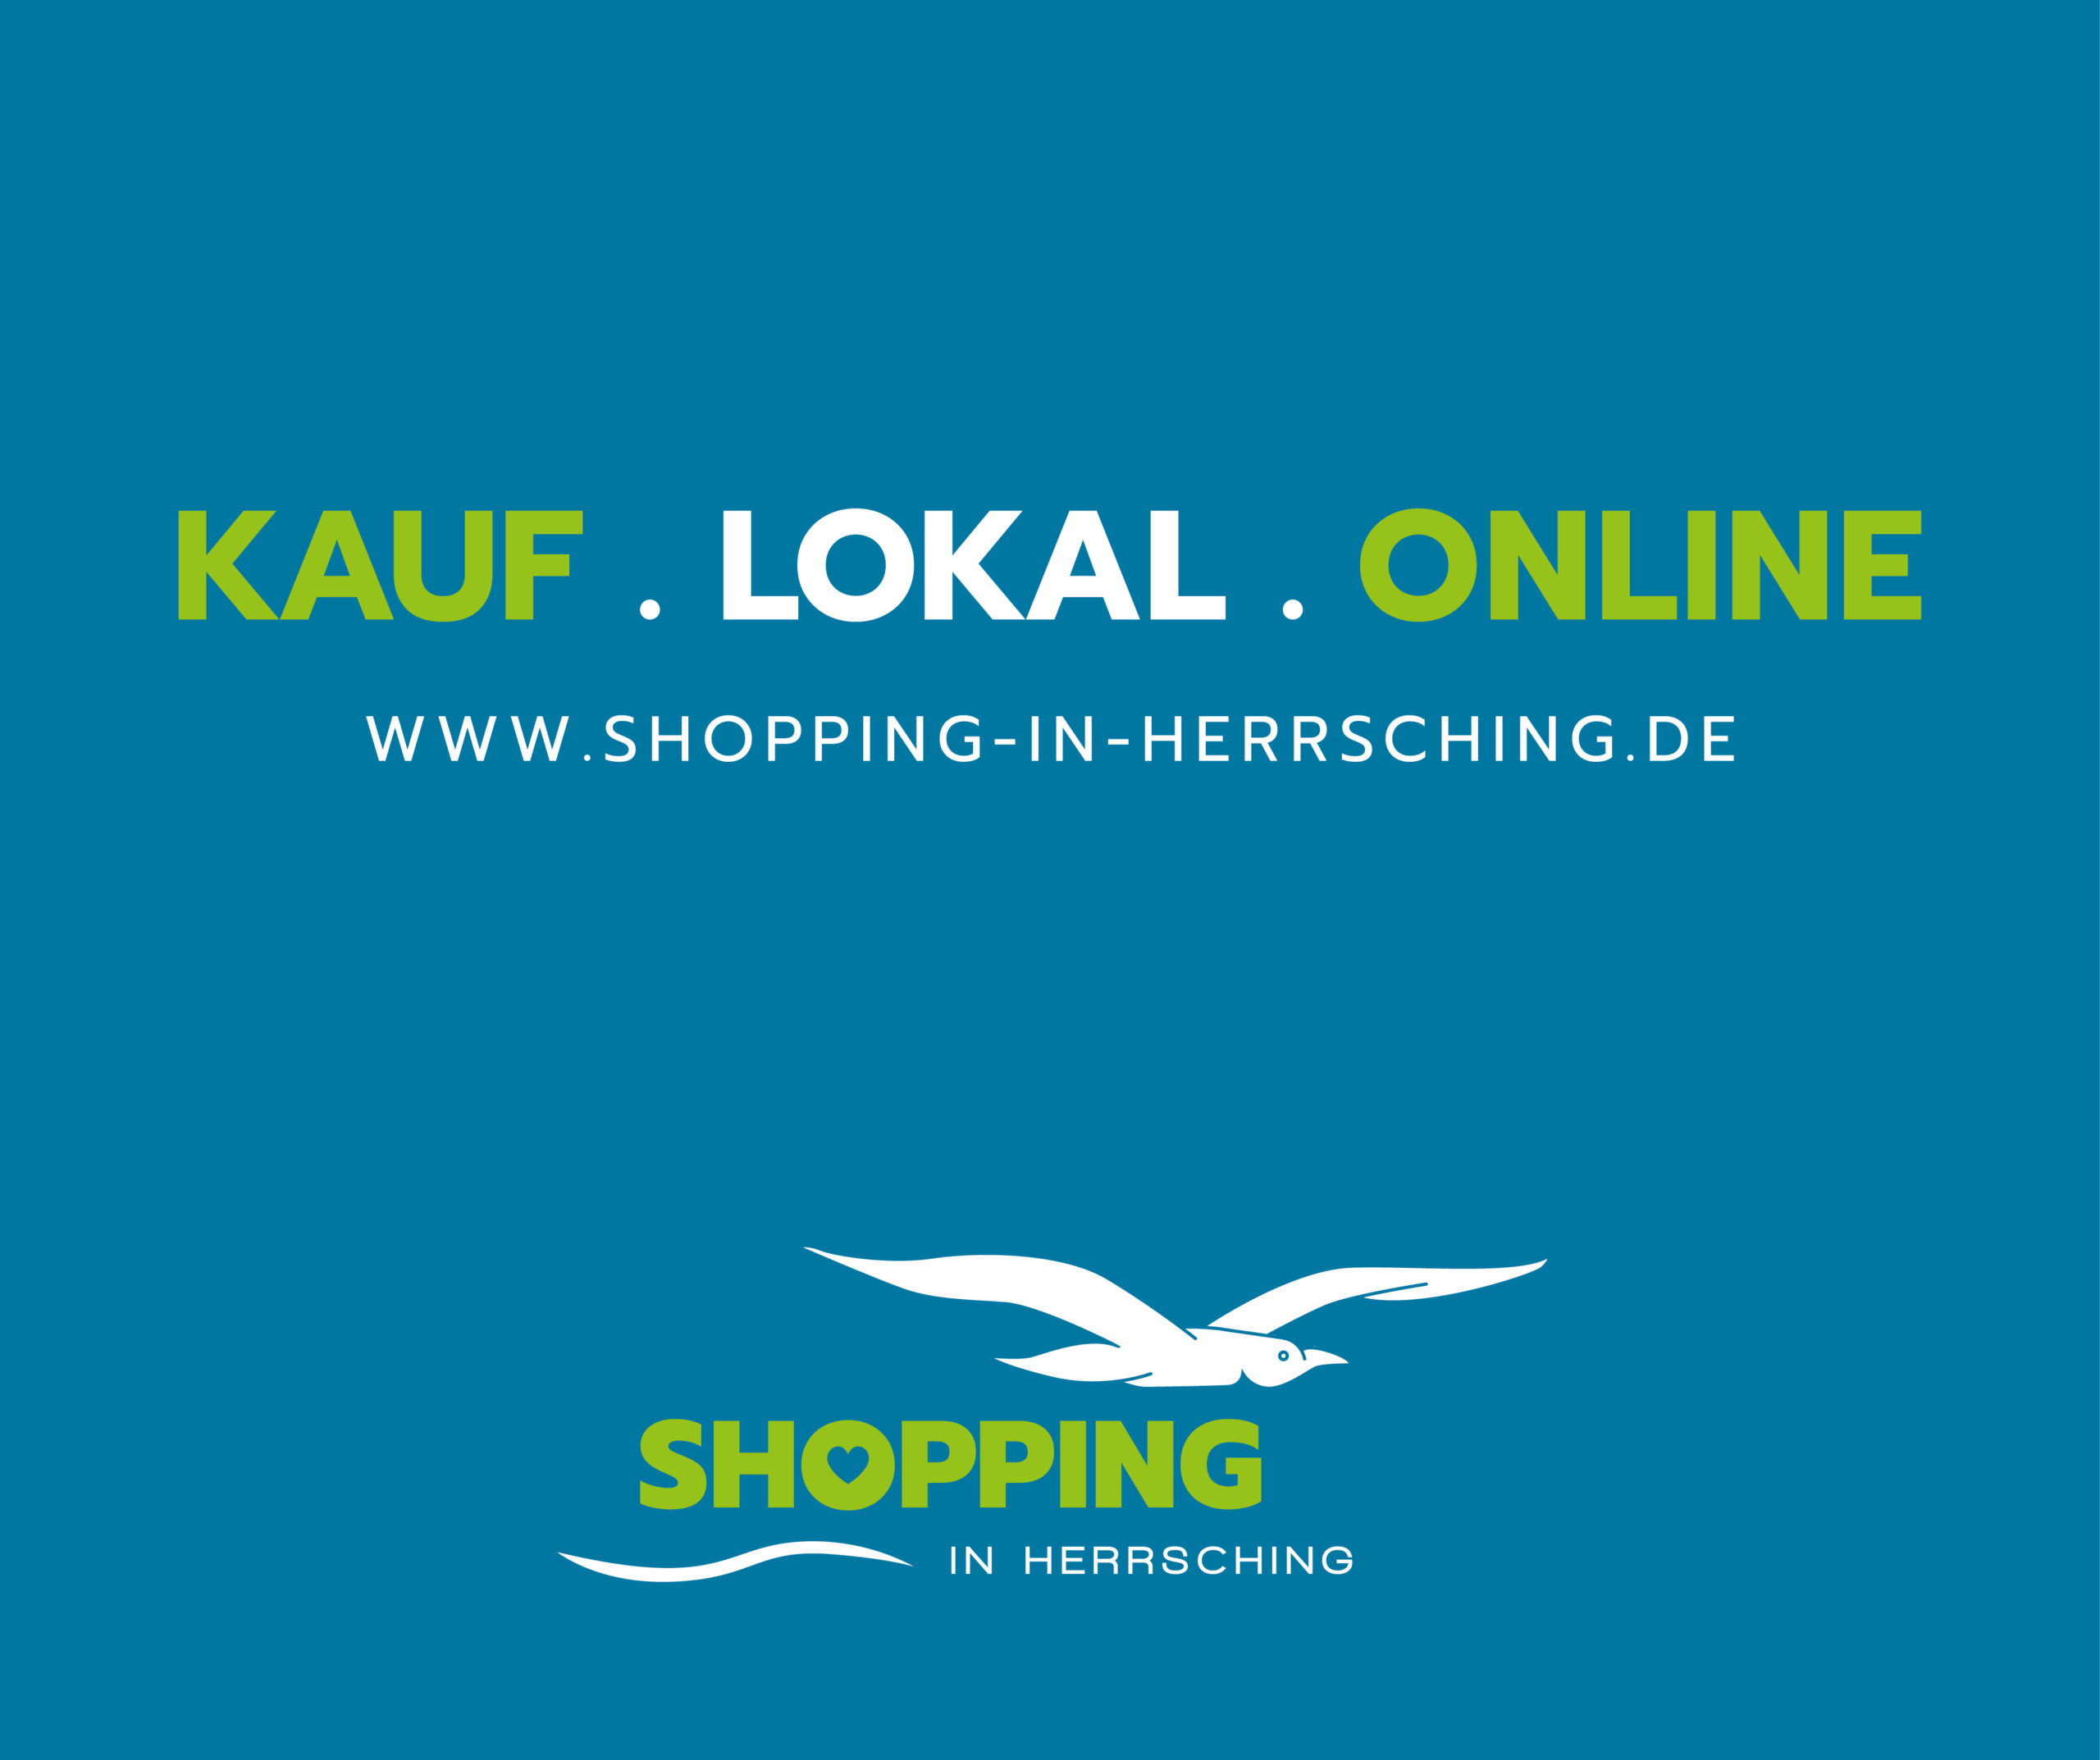 (c) Shopping-in-herrsching.de